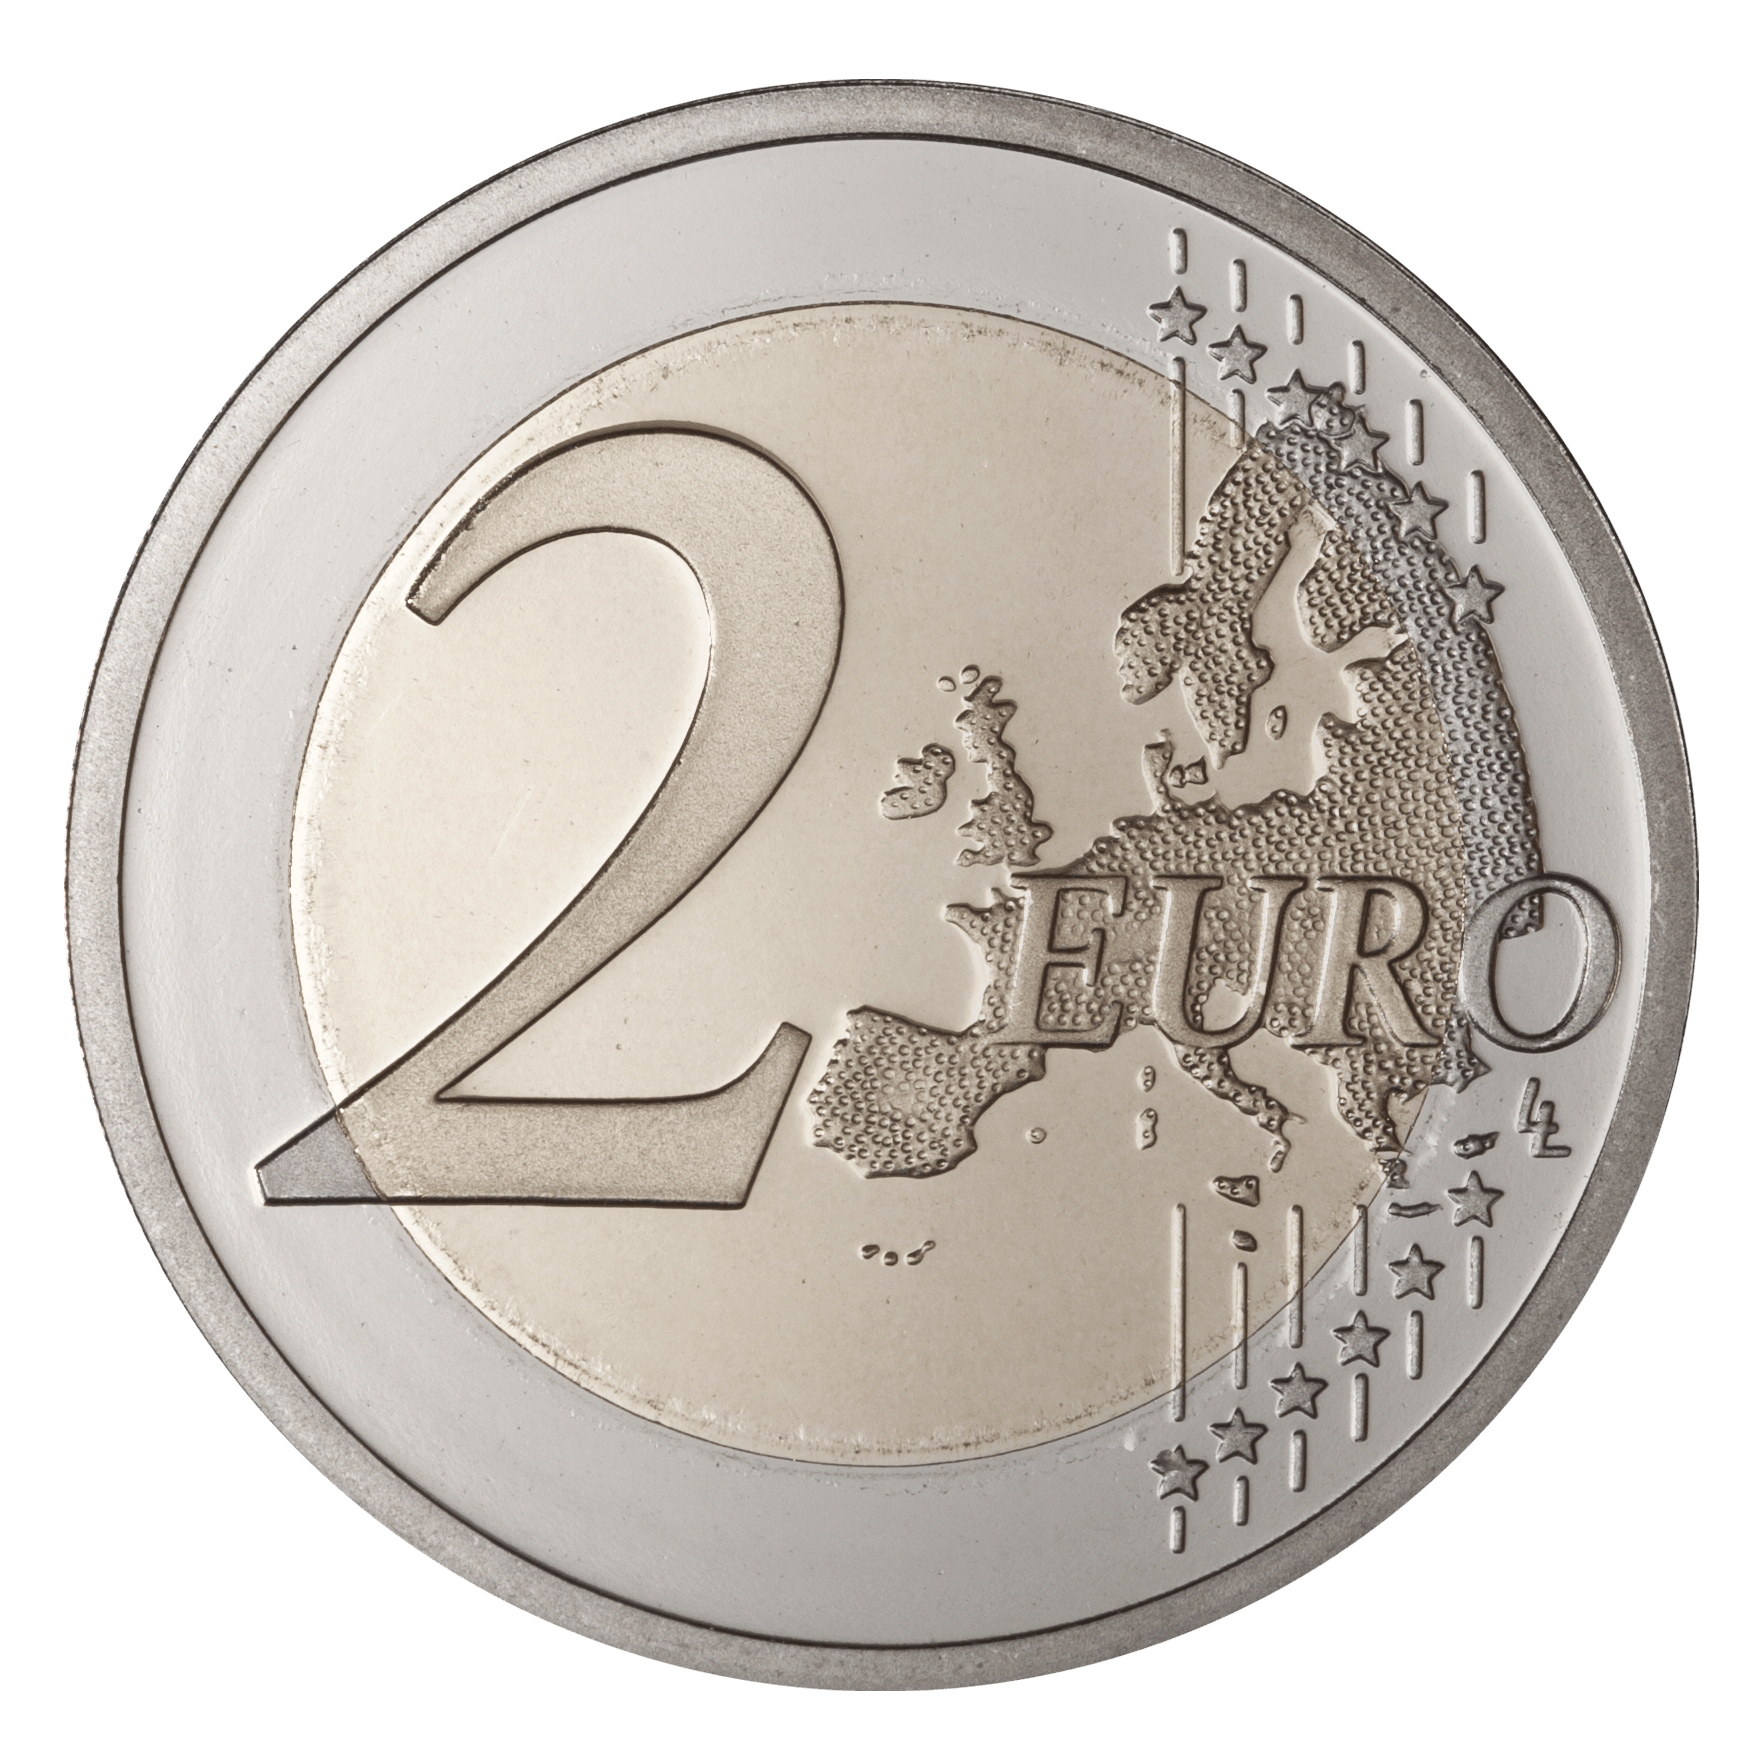 Euro PNG صورة شفافة